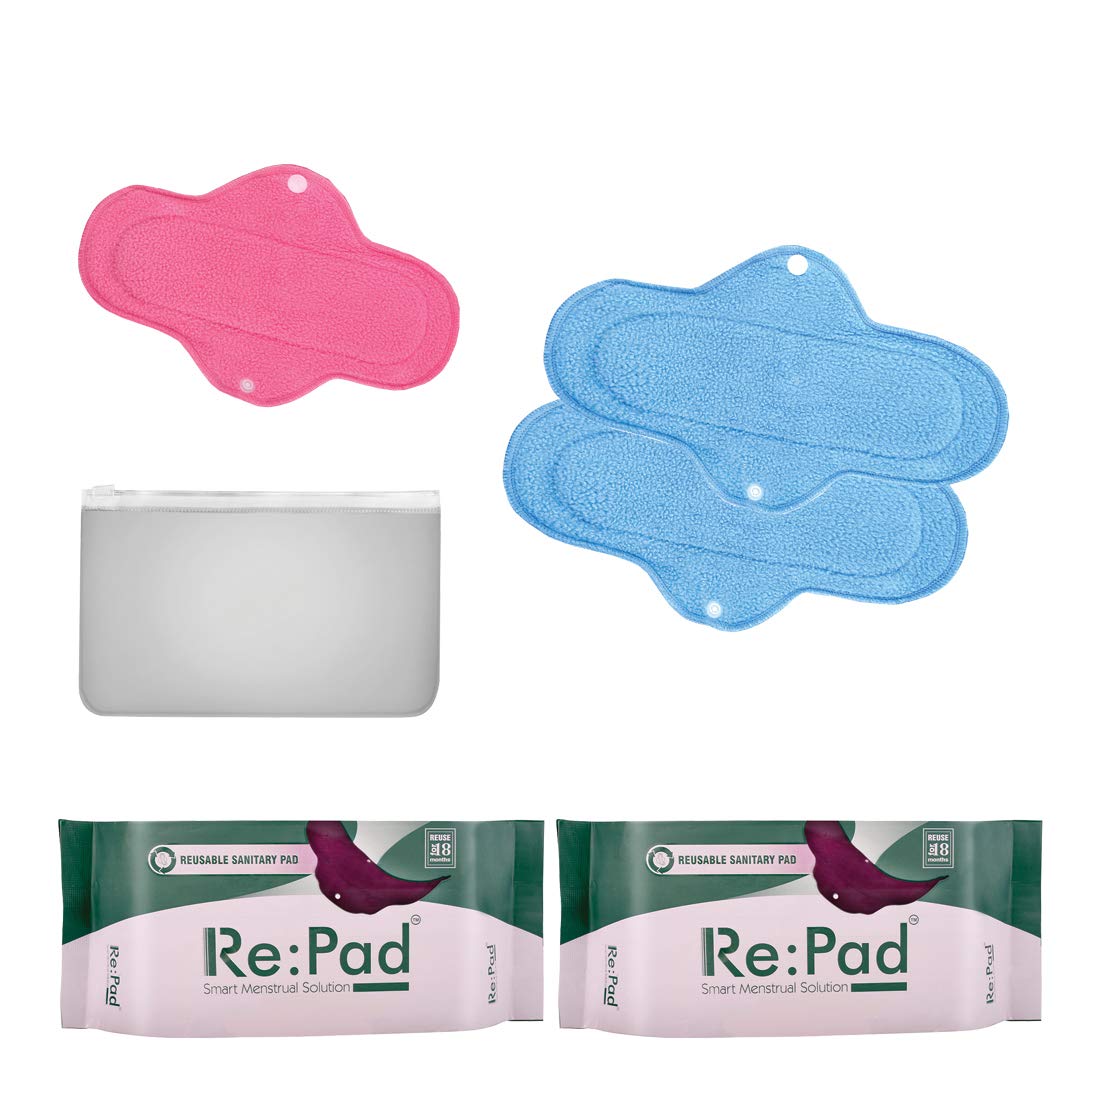 Reusable Sanitary Pad Kits